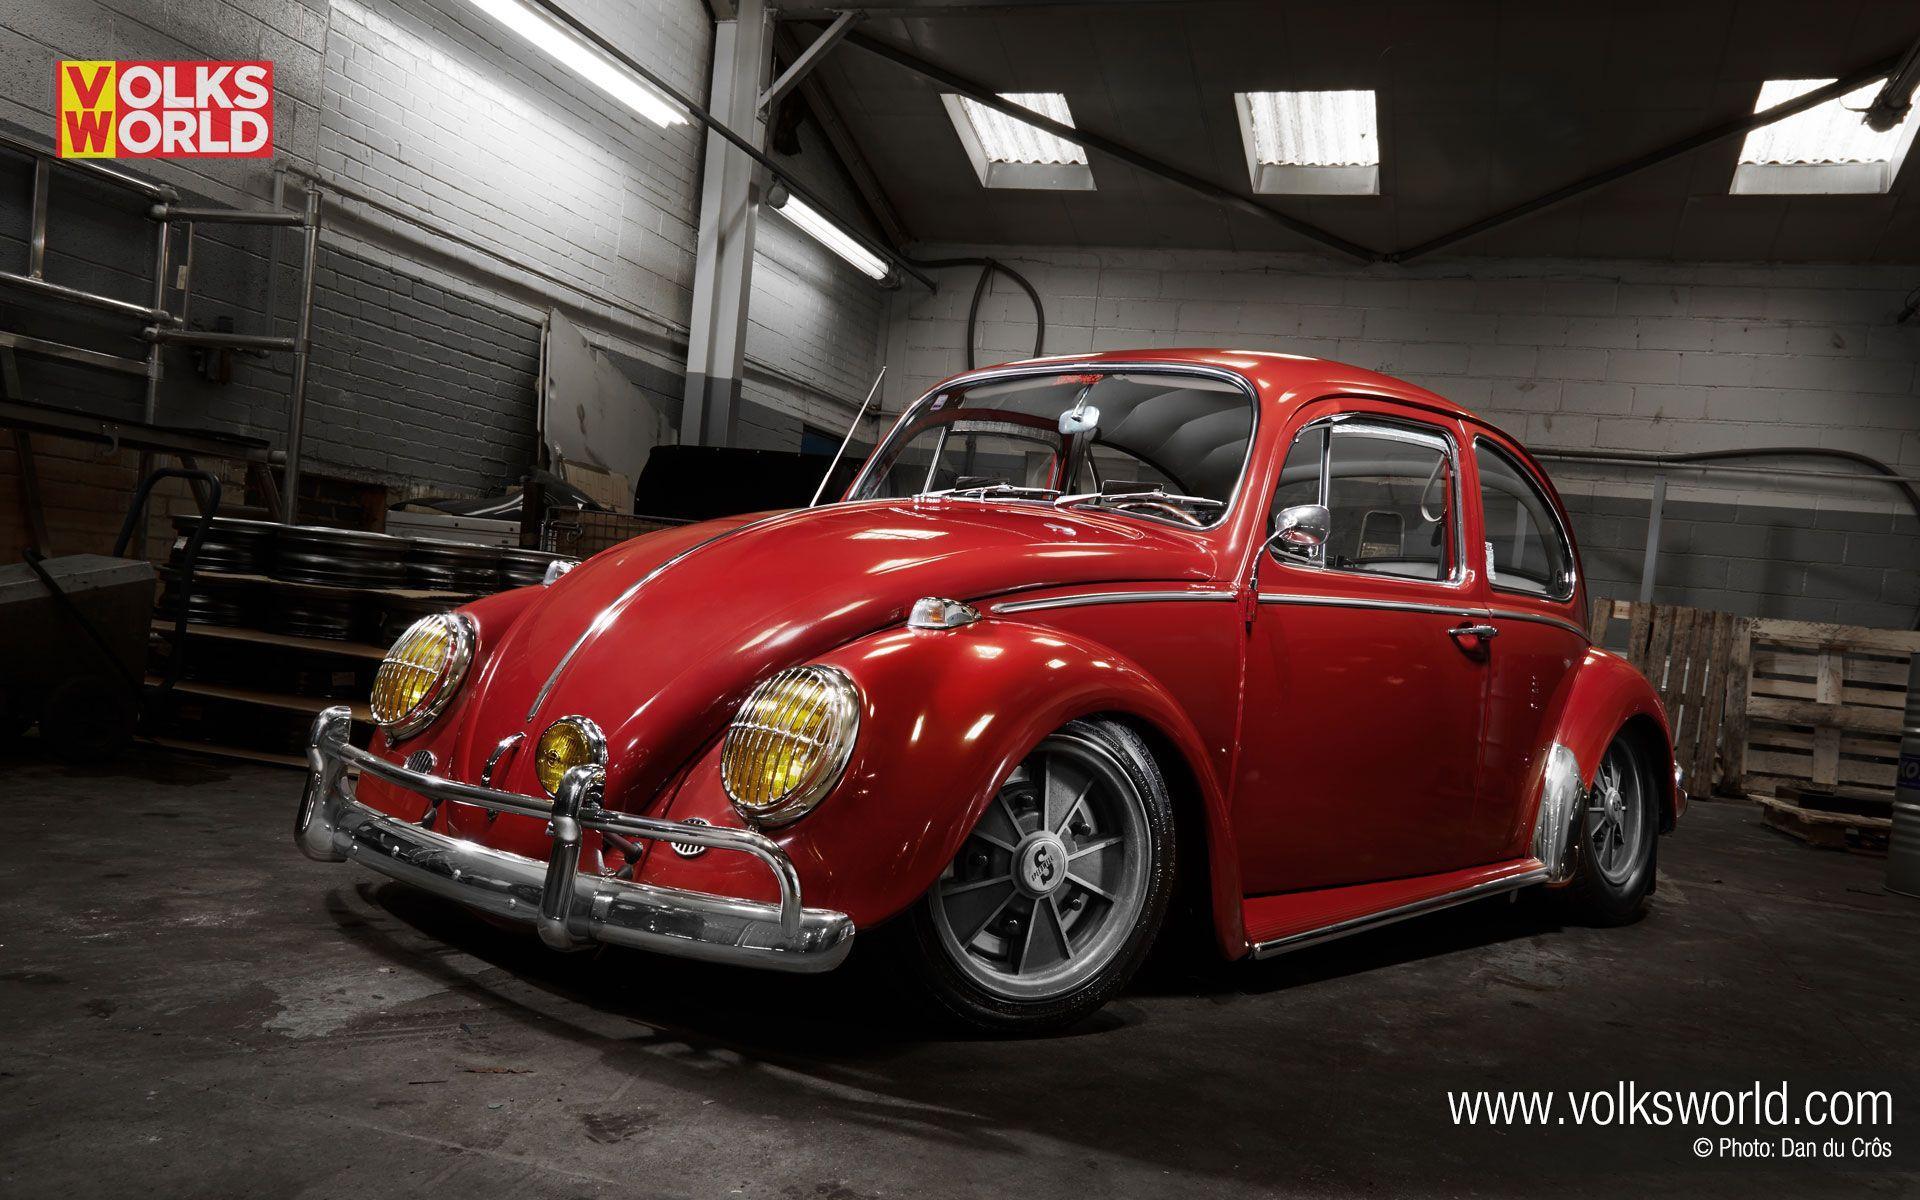 Volkswagen Beetle Wallpaper